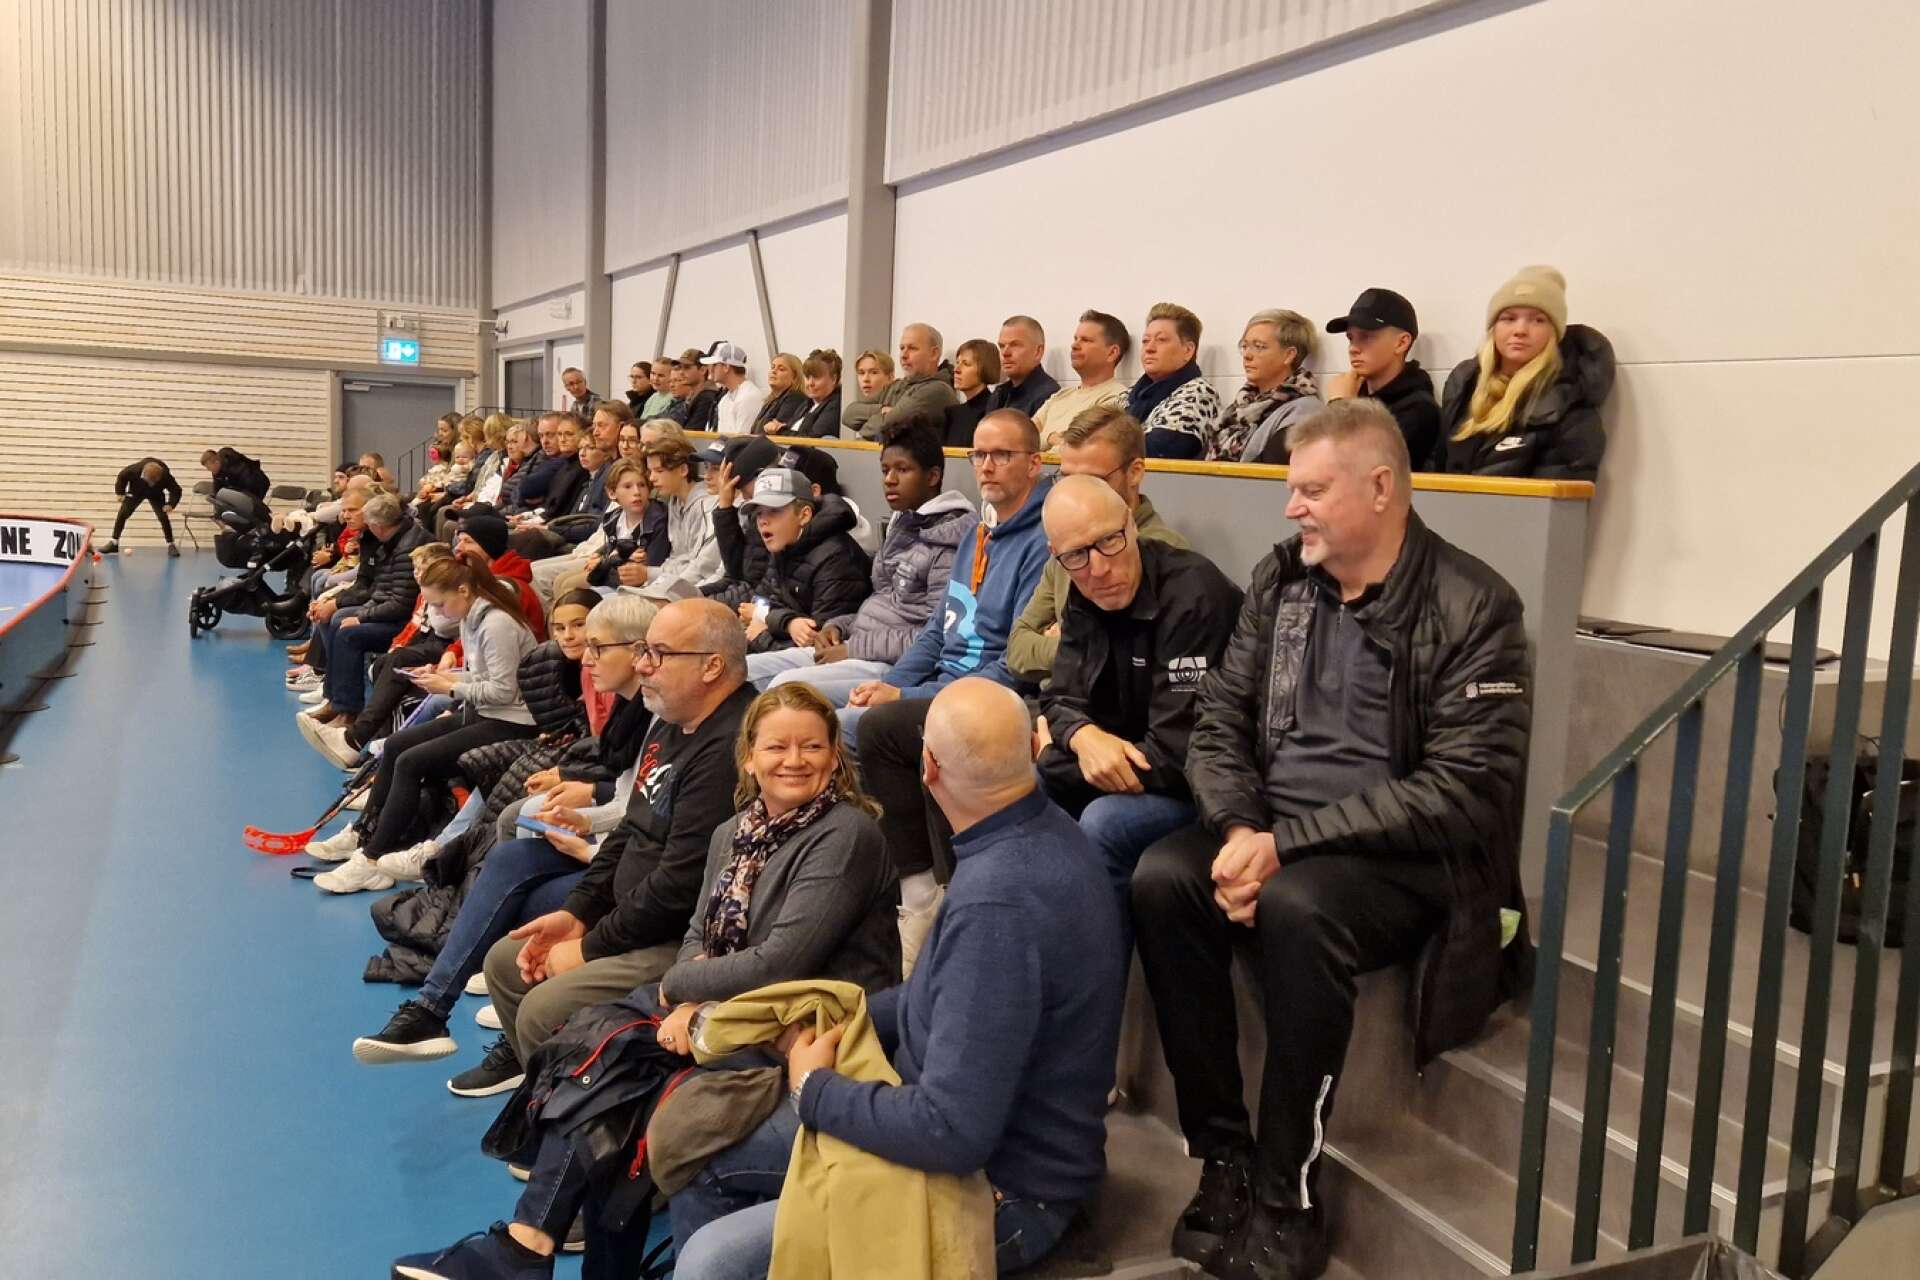 Det var 237 åskådare som såg mötet i Vilanhallen i Skara.